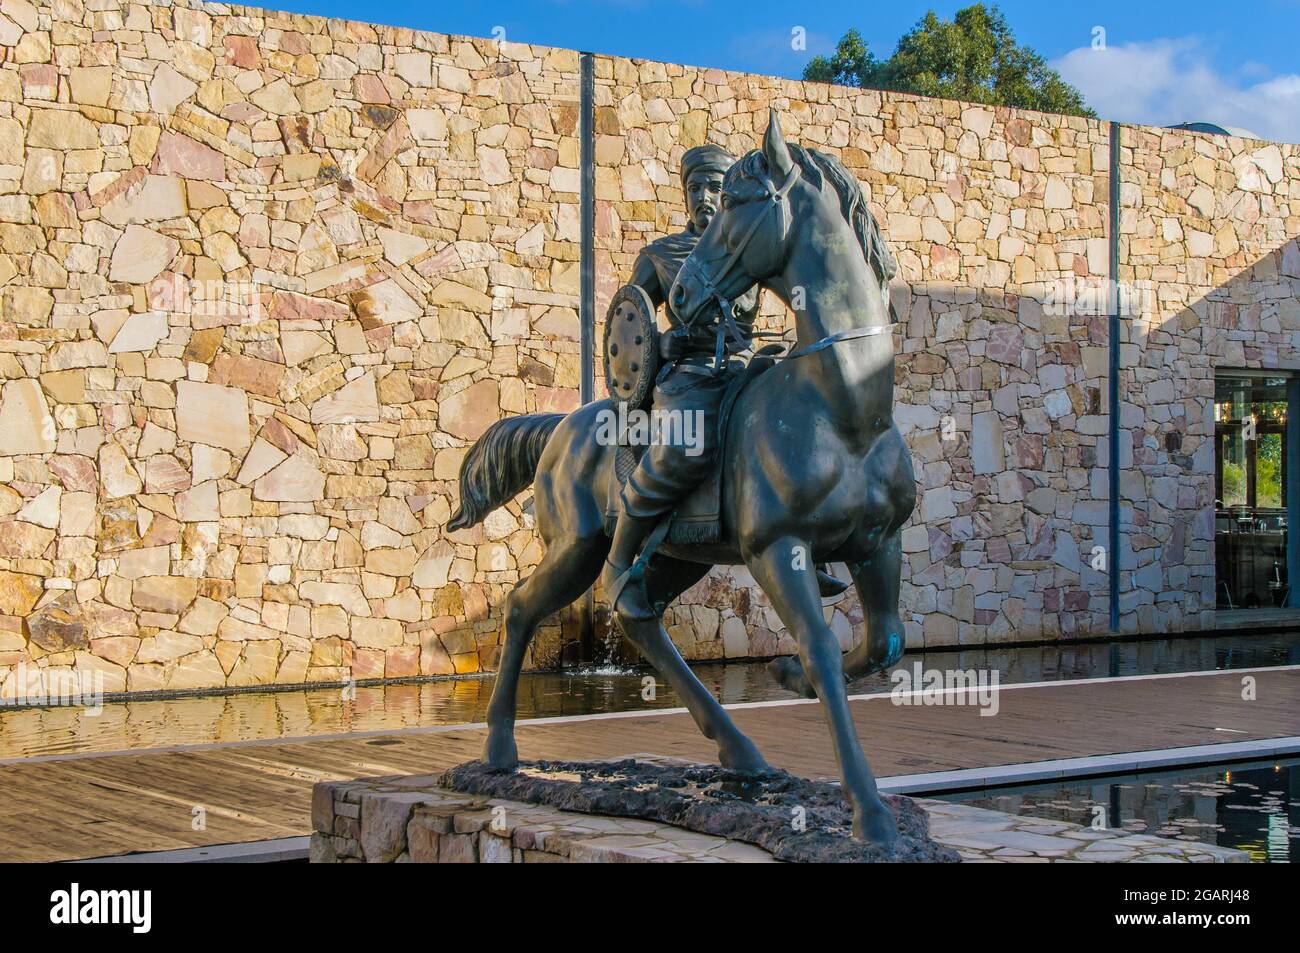 Impresionante estatua de bronce de tamaño natural del caballero saracén, Saladin y su caballo en la bodega Saracen, Wilyabrip, Margaret River, Australia Occidental. Foto de stock